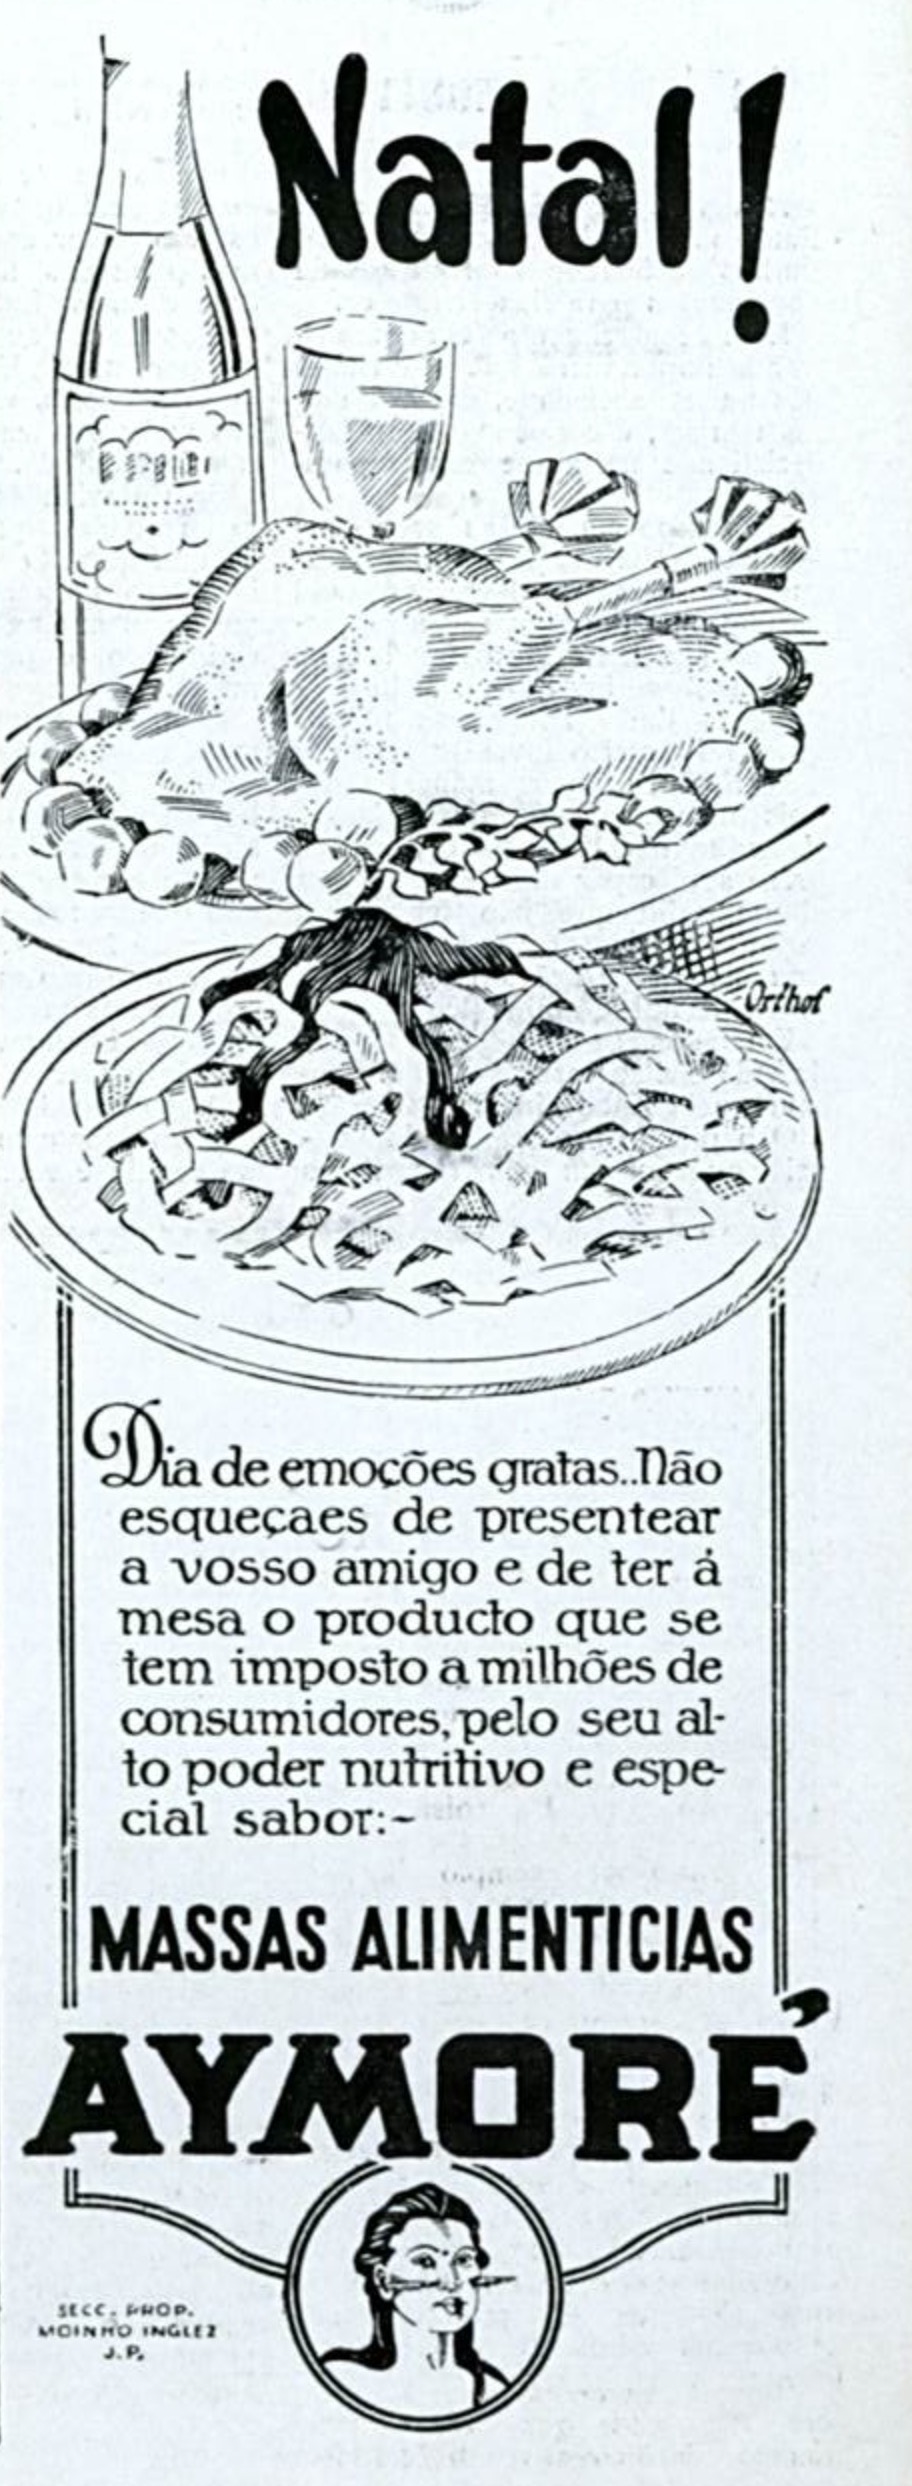 Campanha veiculada em 1930 ofertando as massas alimentícias da Aymoré para as festas natalinas